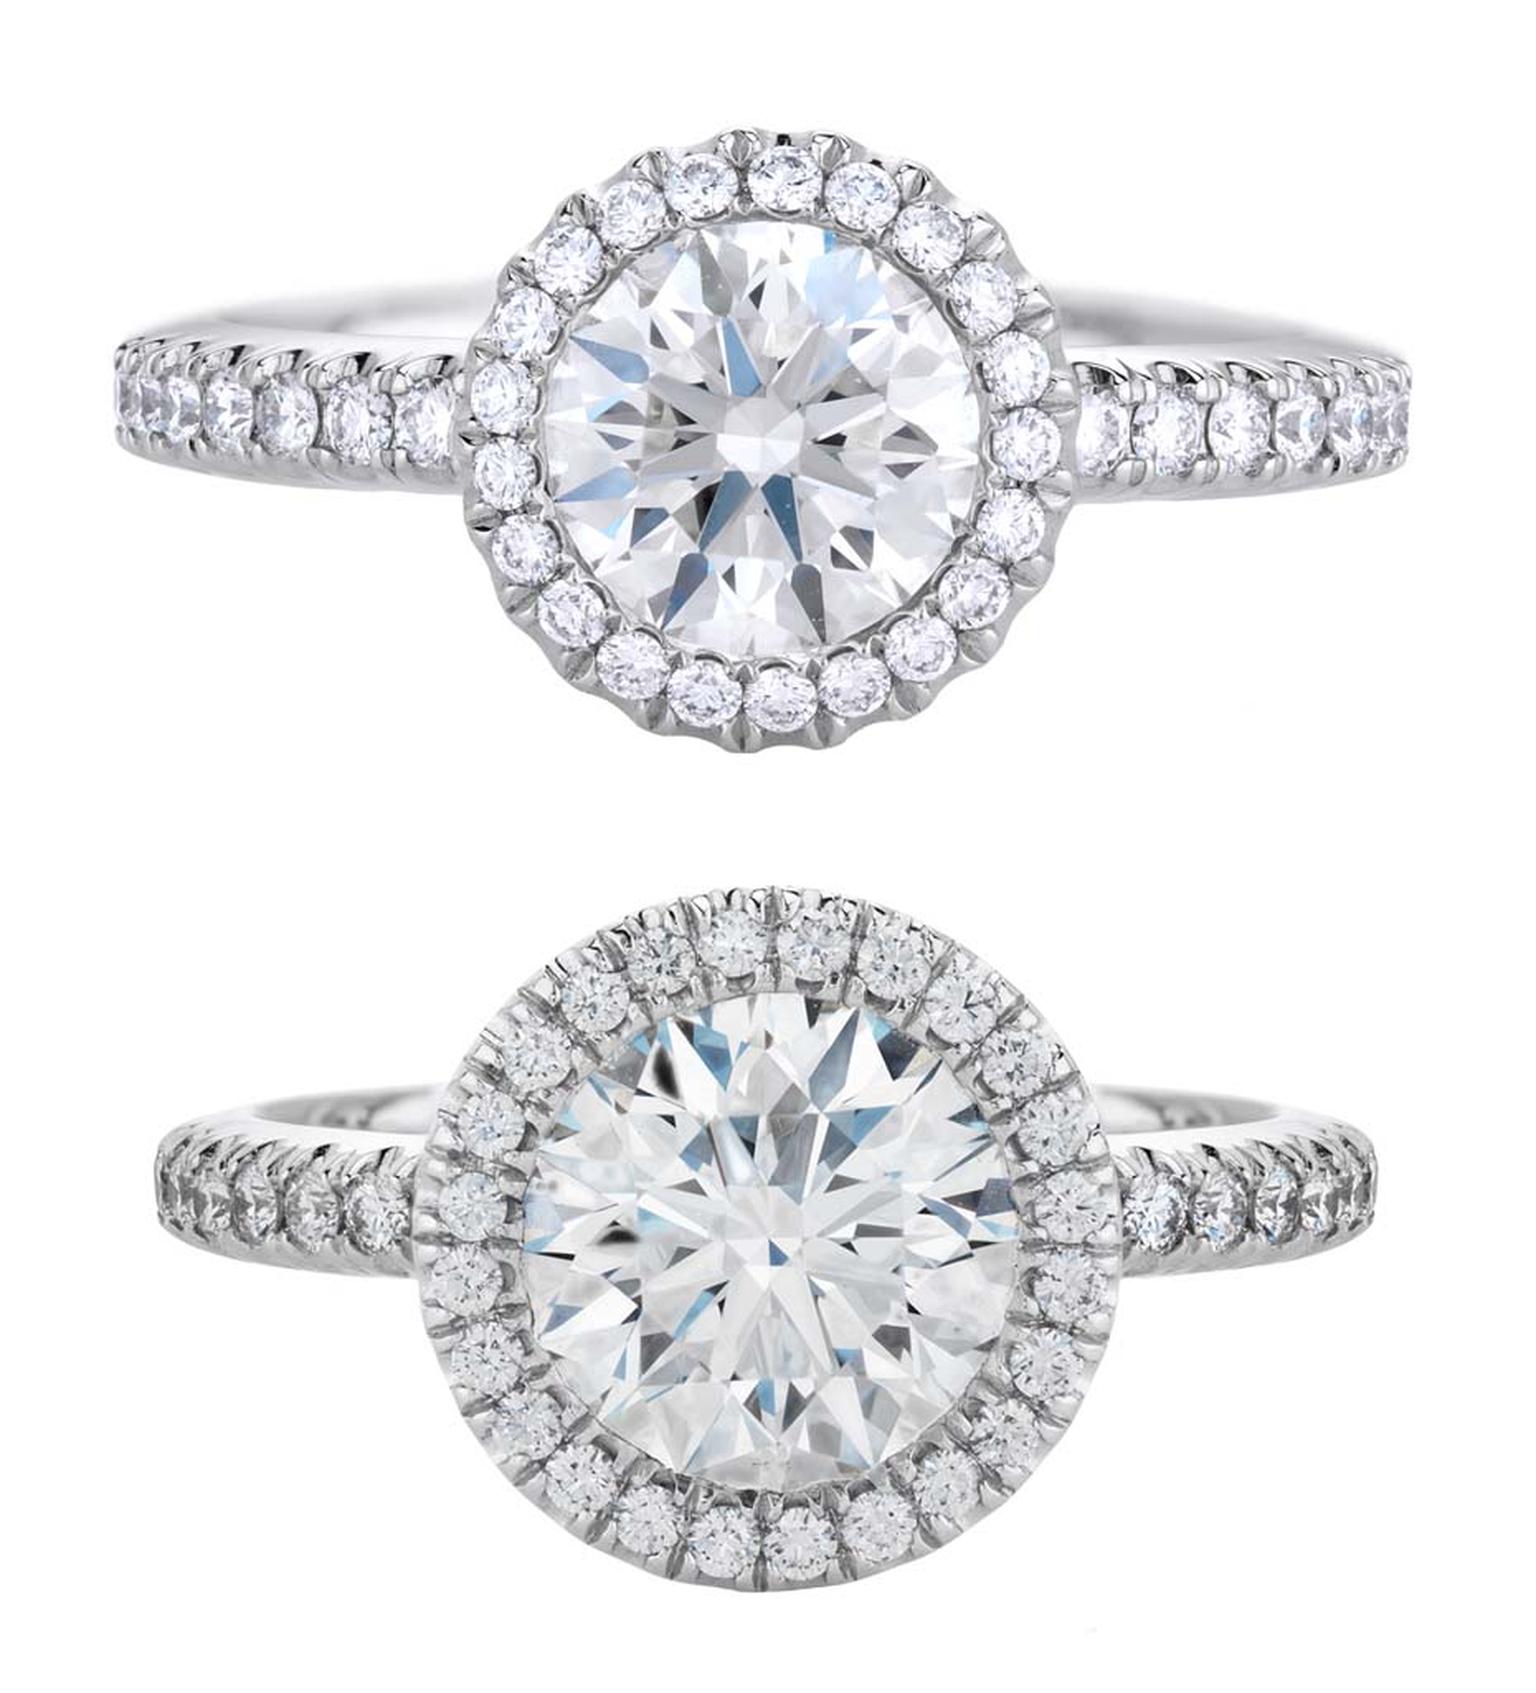 De Beers Aura 1 carat diamond engagement ring and 2 carat diamond engagement ring